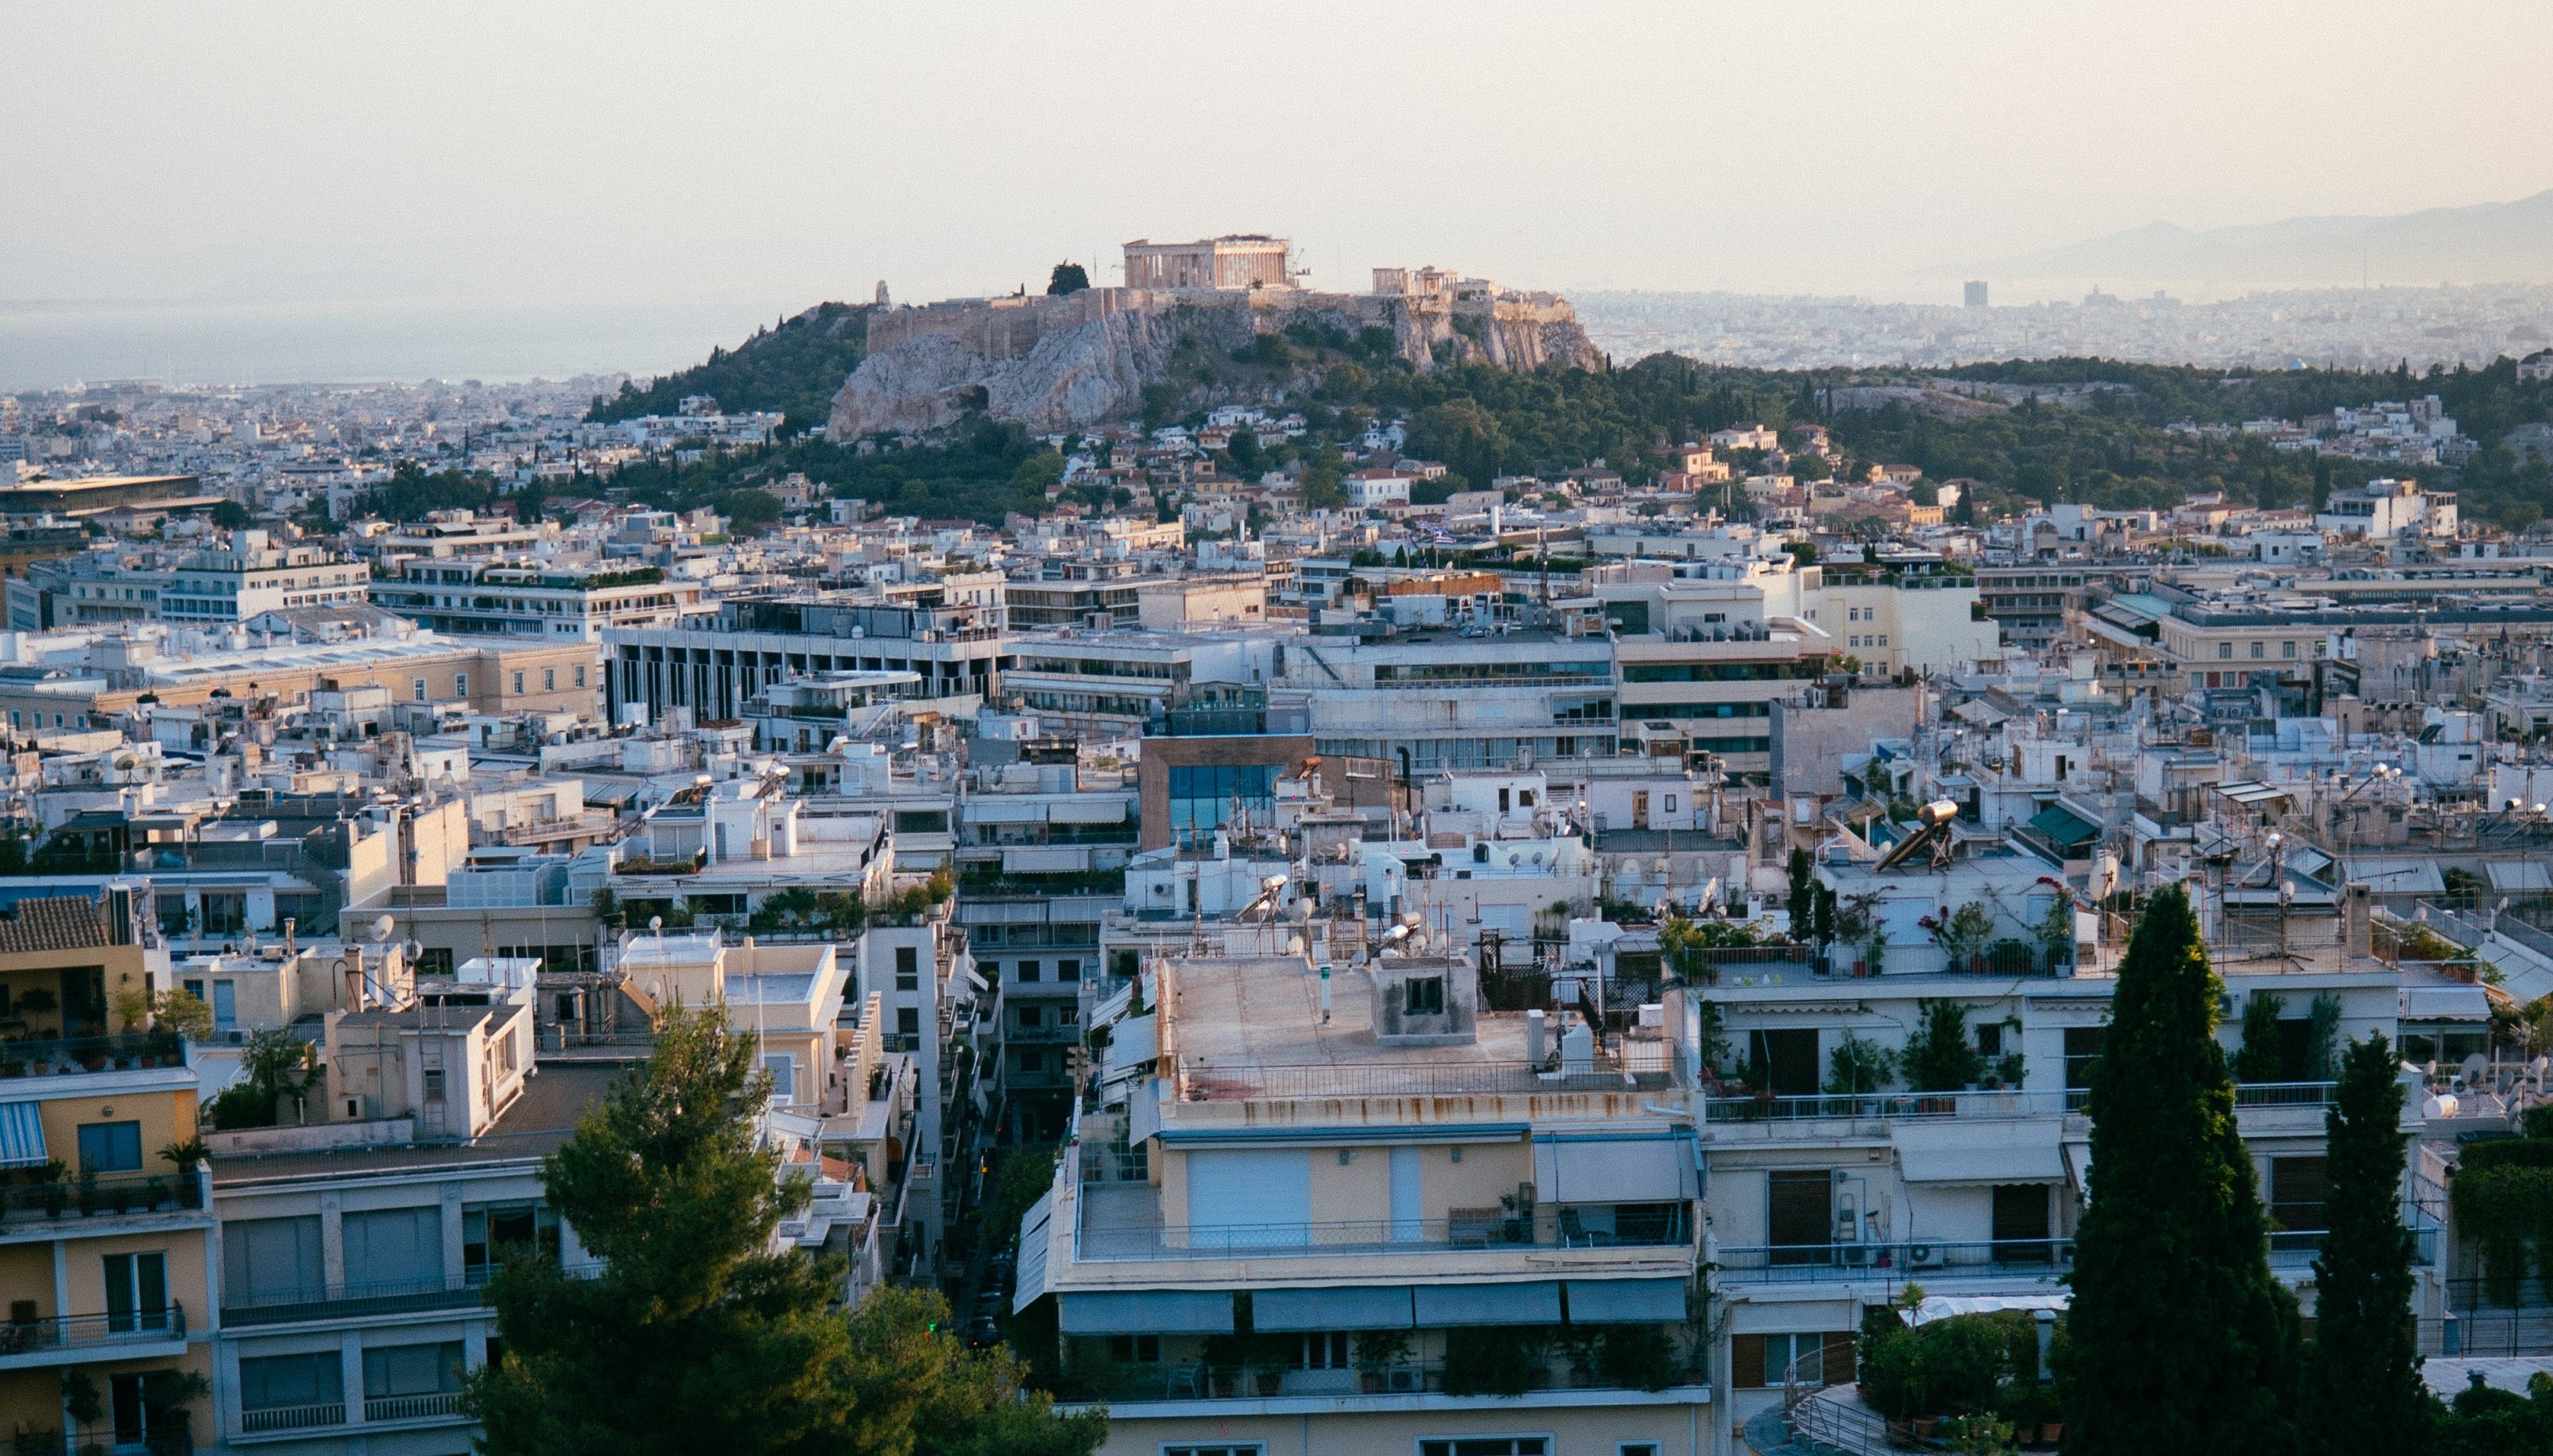 Airbnb βραχυχρόνια μίσθωση: Απόφαση του Πρωτοδικείου Αθηνών που ανατρέπει τα δεδομένα